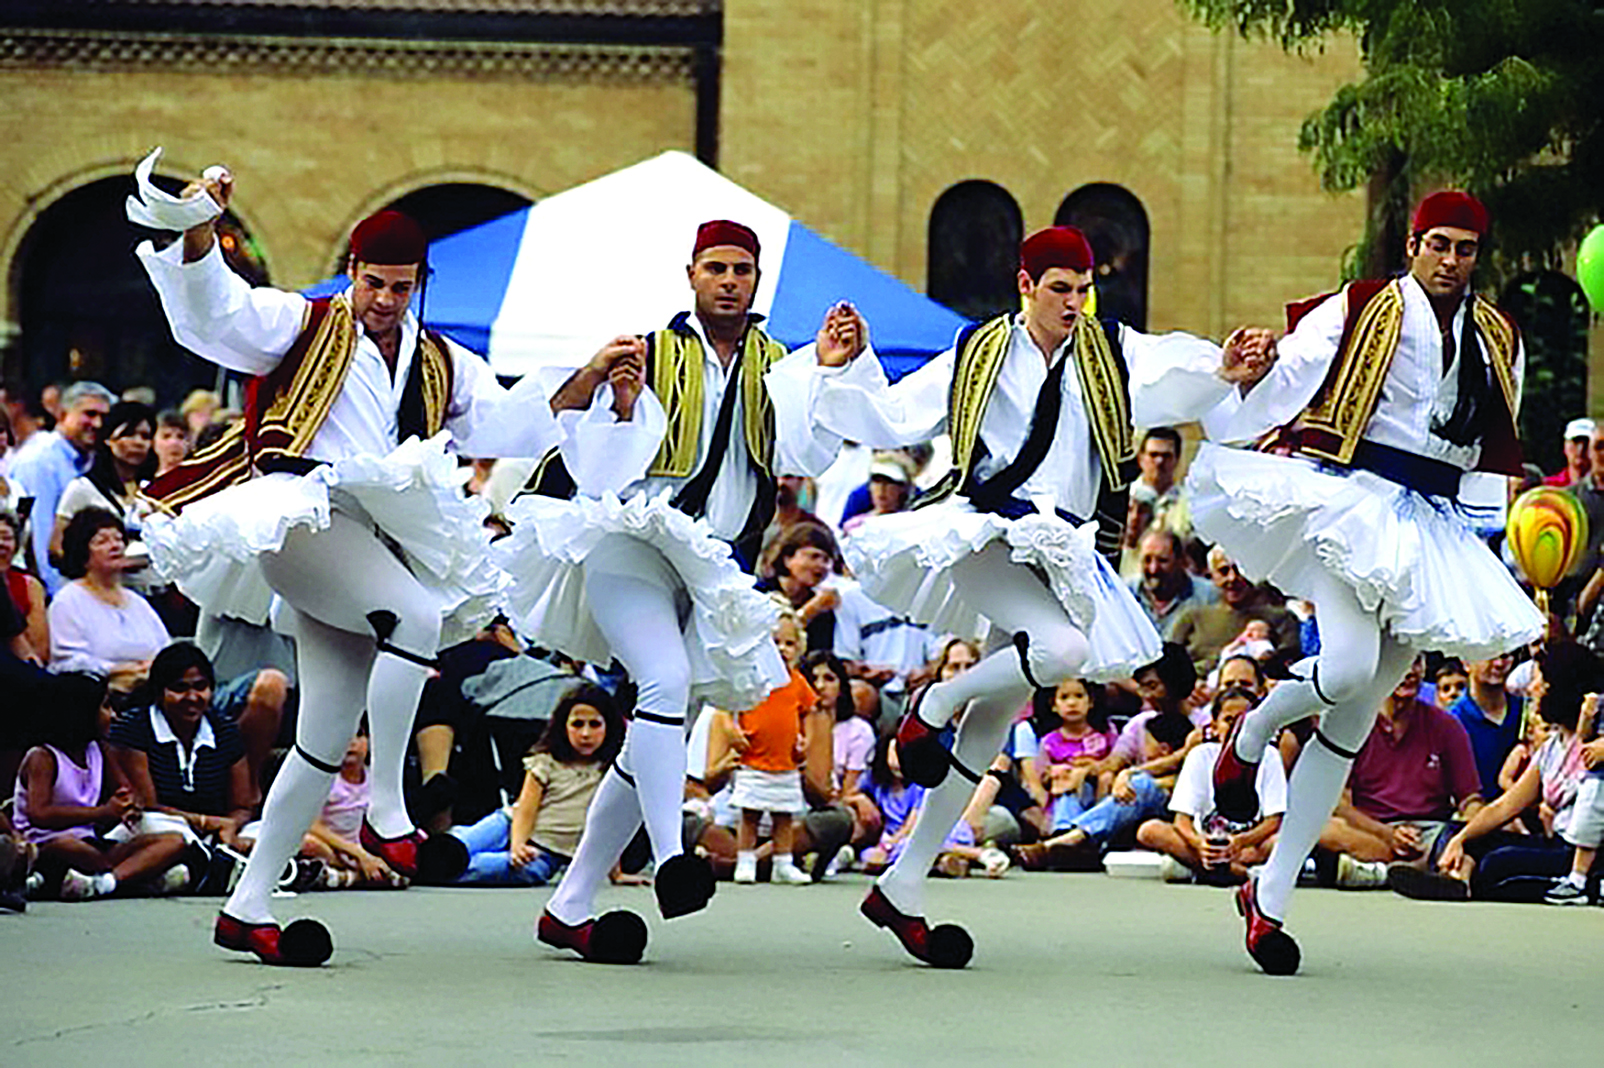 27th Annual Marietta Greek Festival EAST COBBER